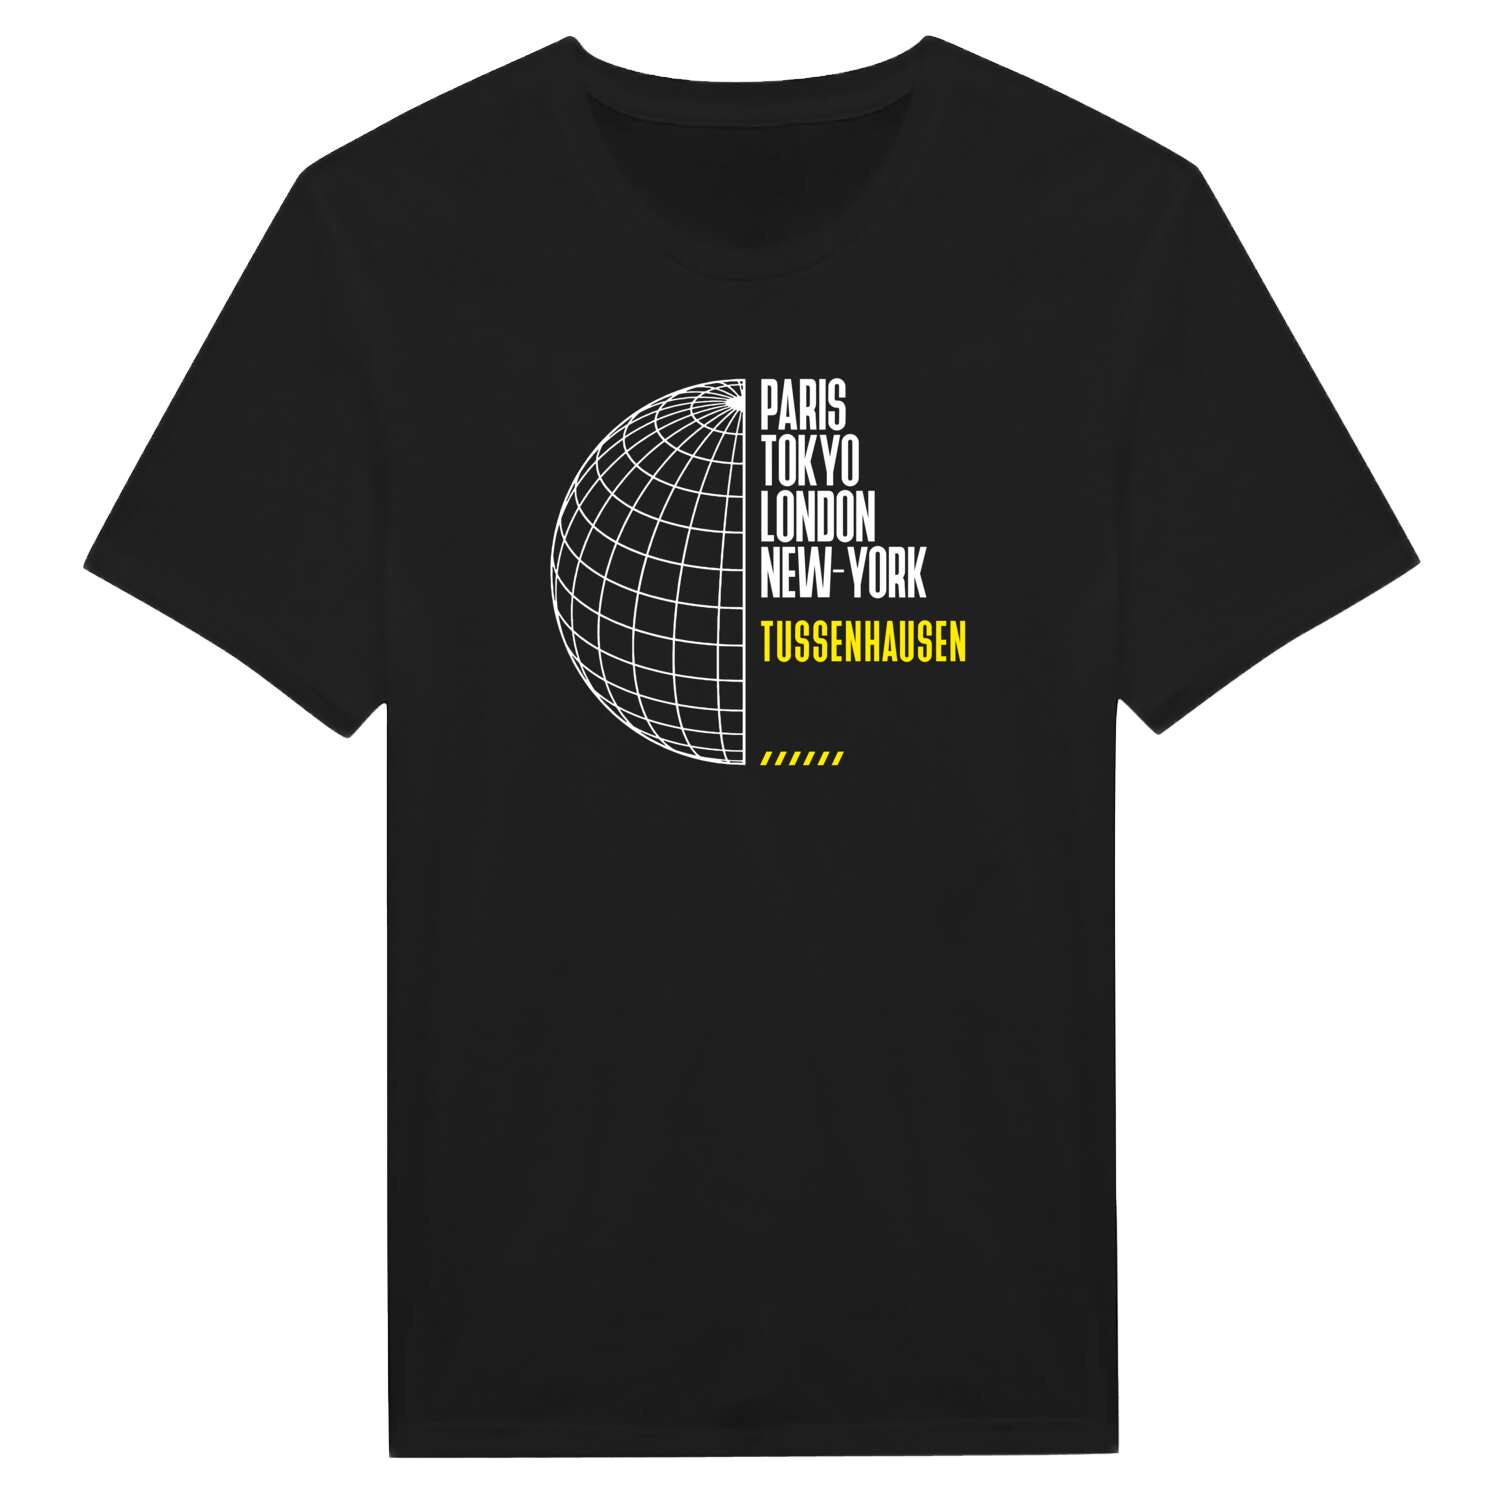 Tussenhausen T-Shirt »Paris Tokyo London«